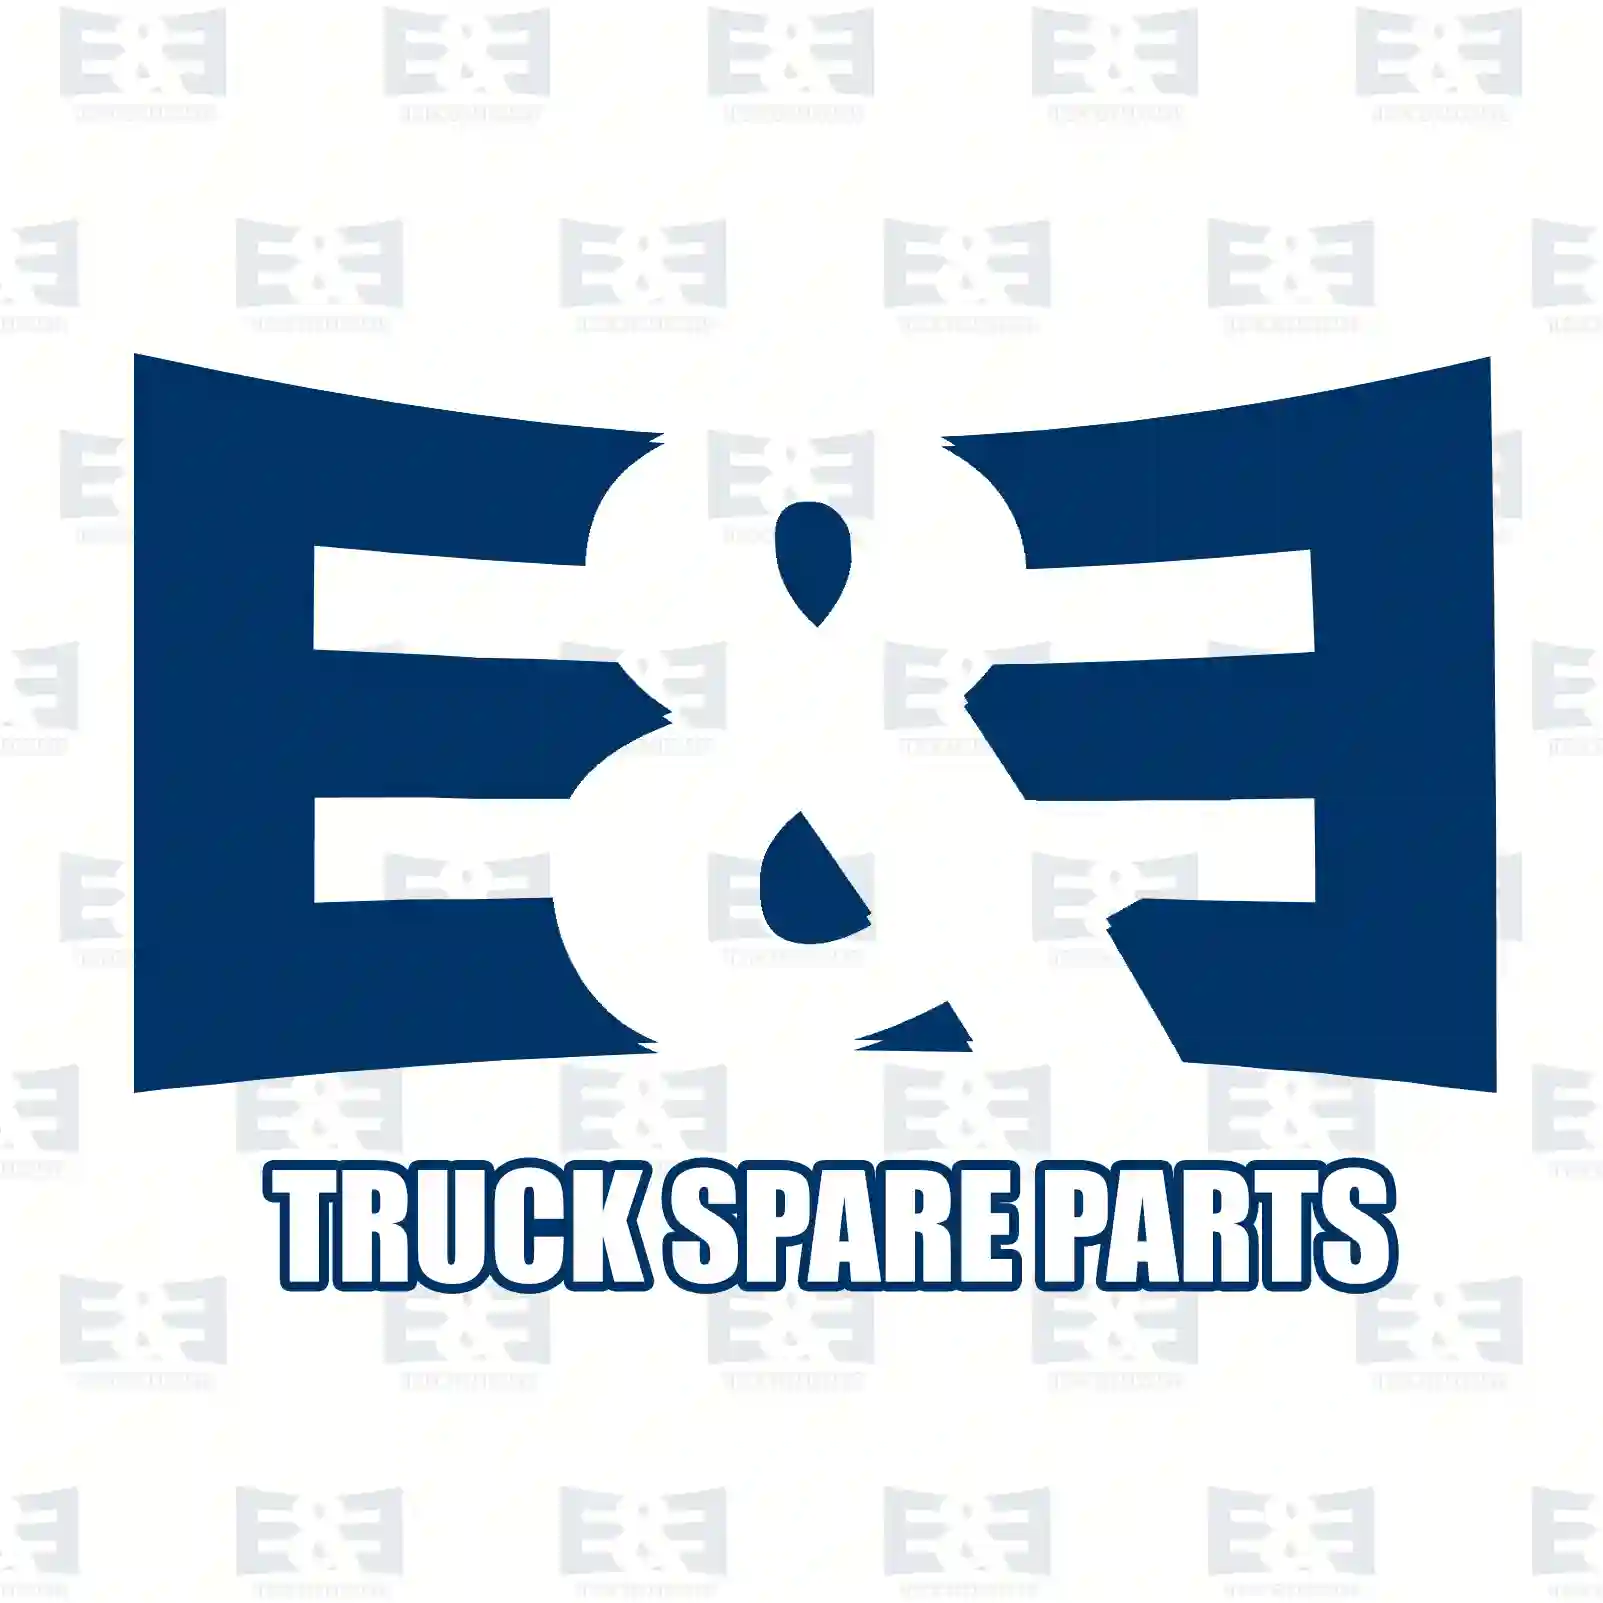 Ball socket, 2E2278955, 7408171931, 8171931, ZG40149-0008 ||  2E2278955 E&E Truck Spare Parts | Truck Spare Parts, Auotomotive Spare Parts Ball socket, 2E2278955, 7408171931, 8171931, ZG40149-0008 ||  2E2278955 E&E Truck Spare Parts | Truck Spare Parts, Auotomotive Spare Parts